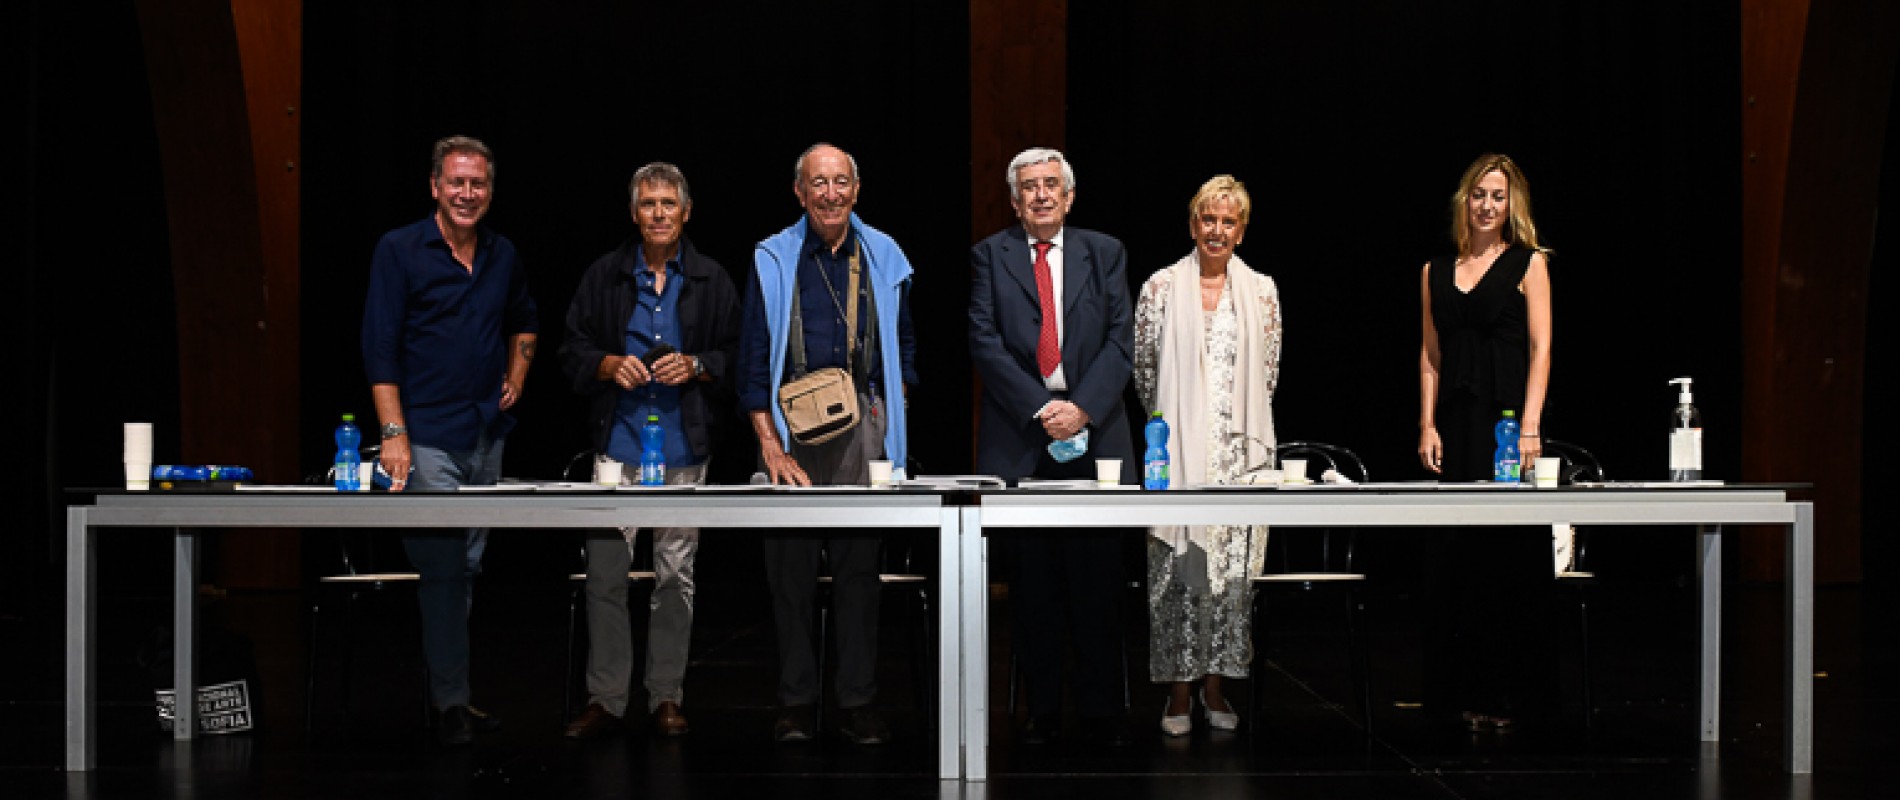 Da sinistra Guido Andrea Pautasso, Sandi Renko, Riccardo Guarneri, Lucano Caprile, Lorella Pagnucco Salvemini, Silvia Toniolo